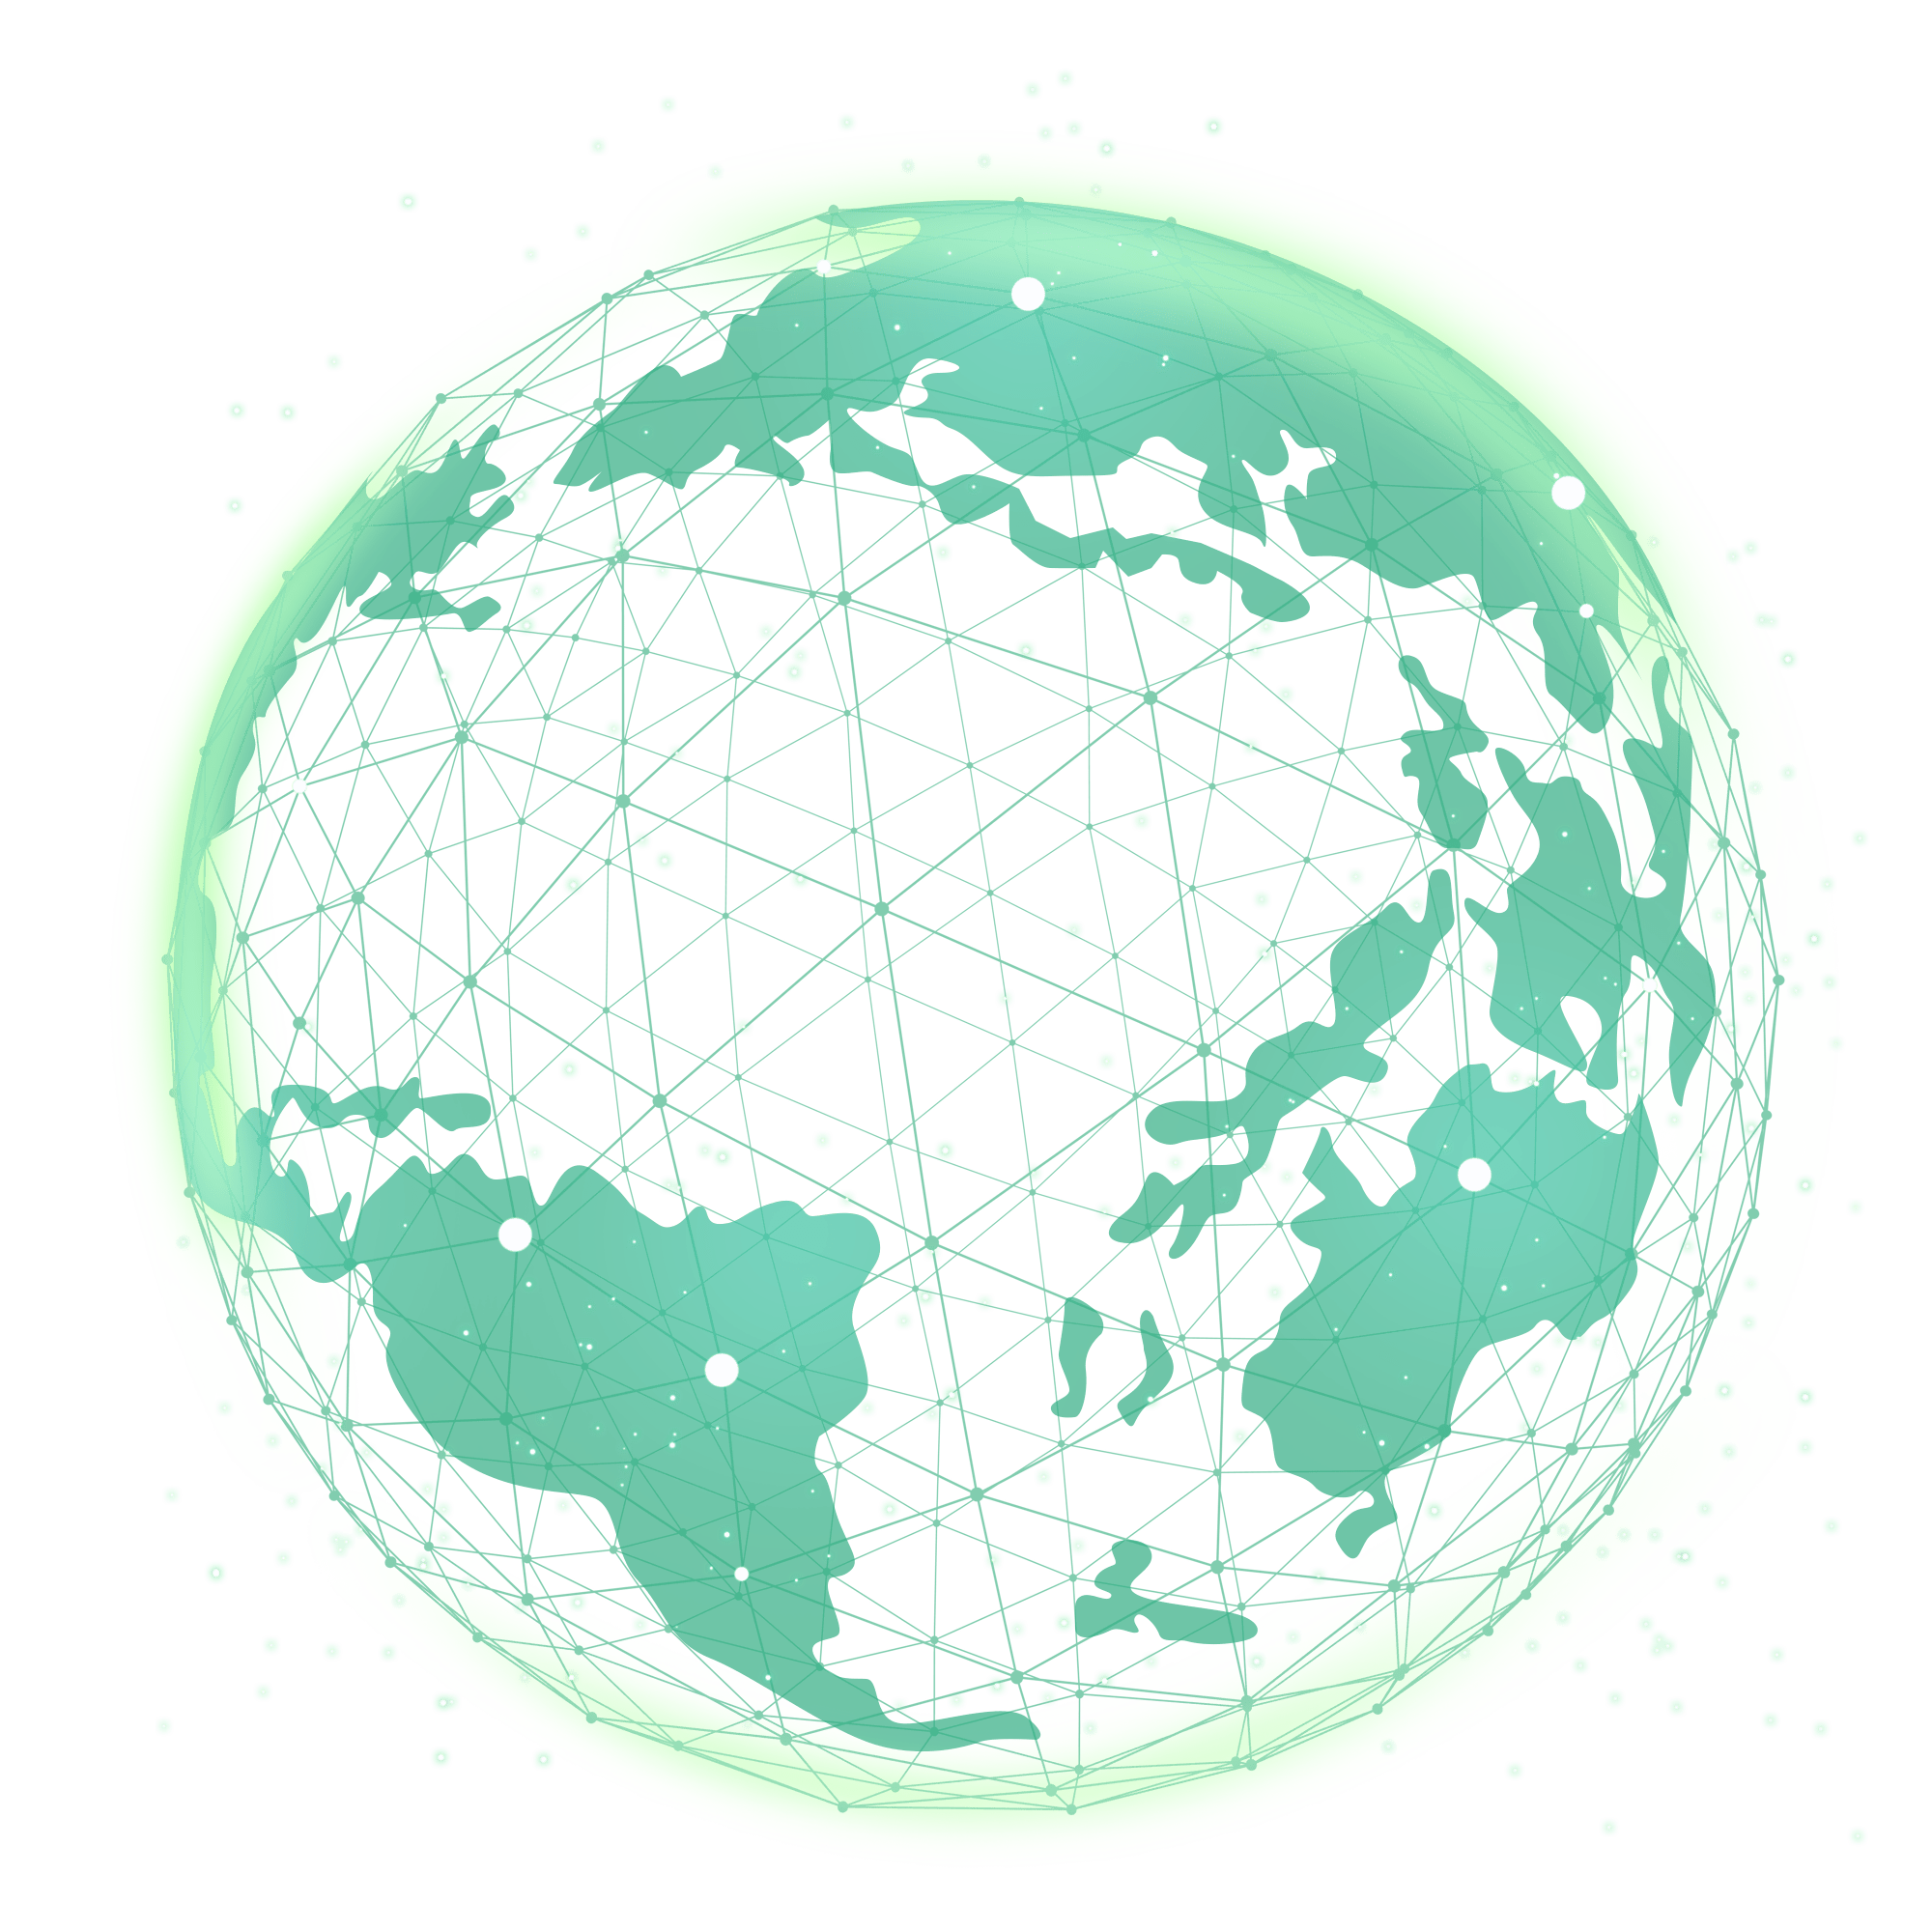 Globe image